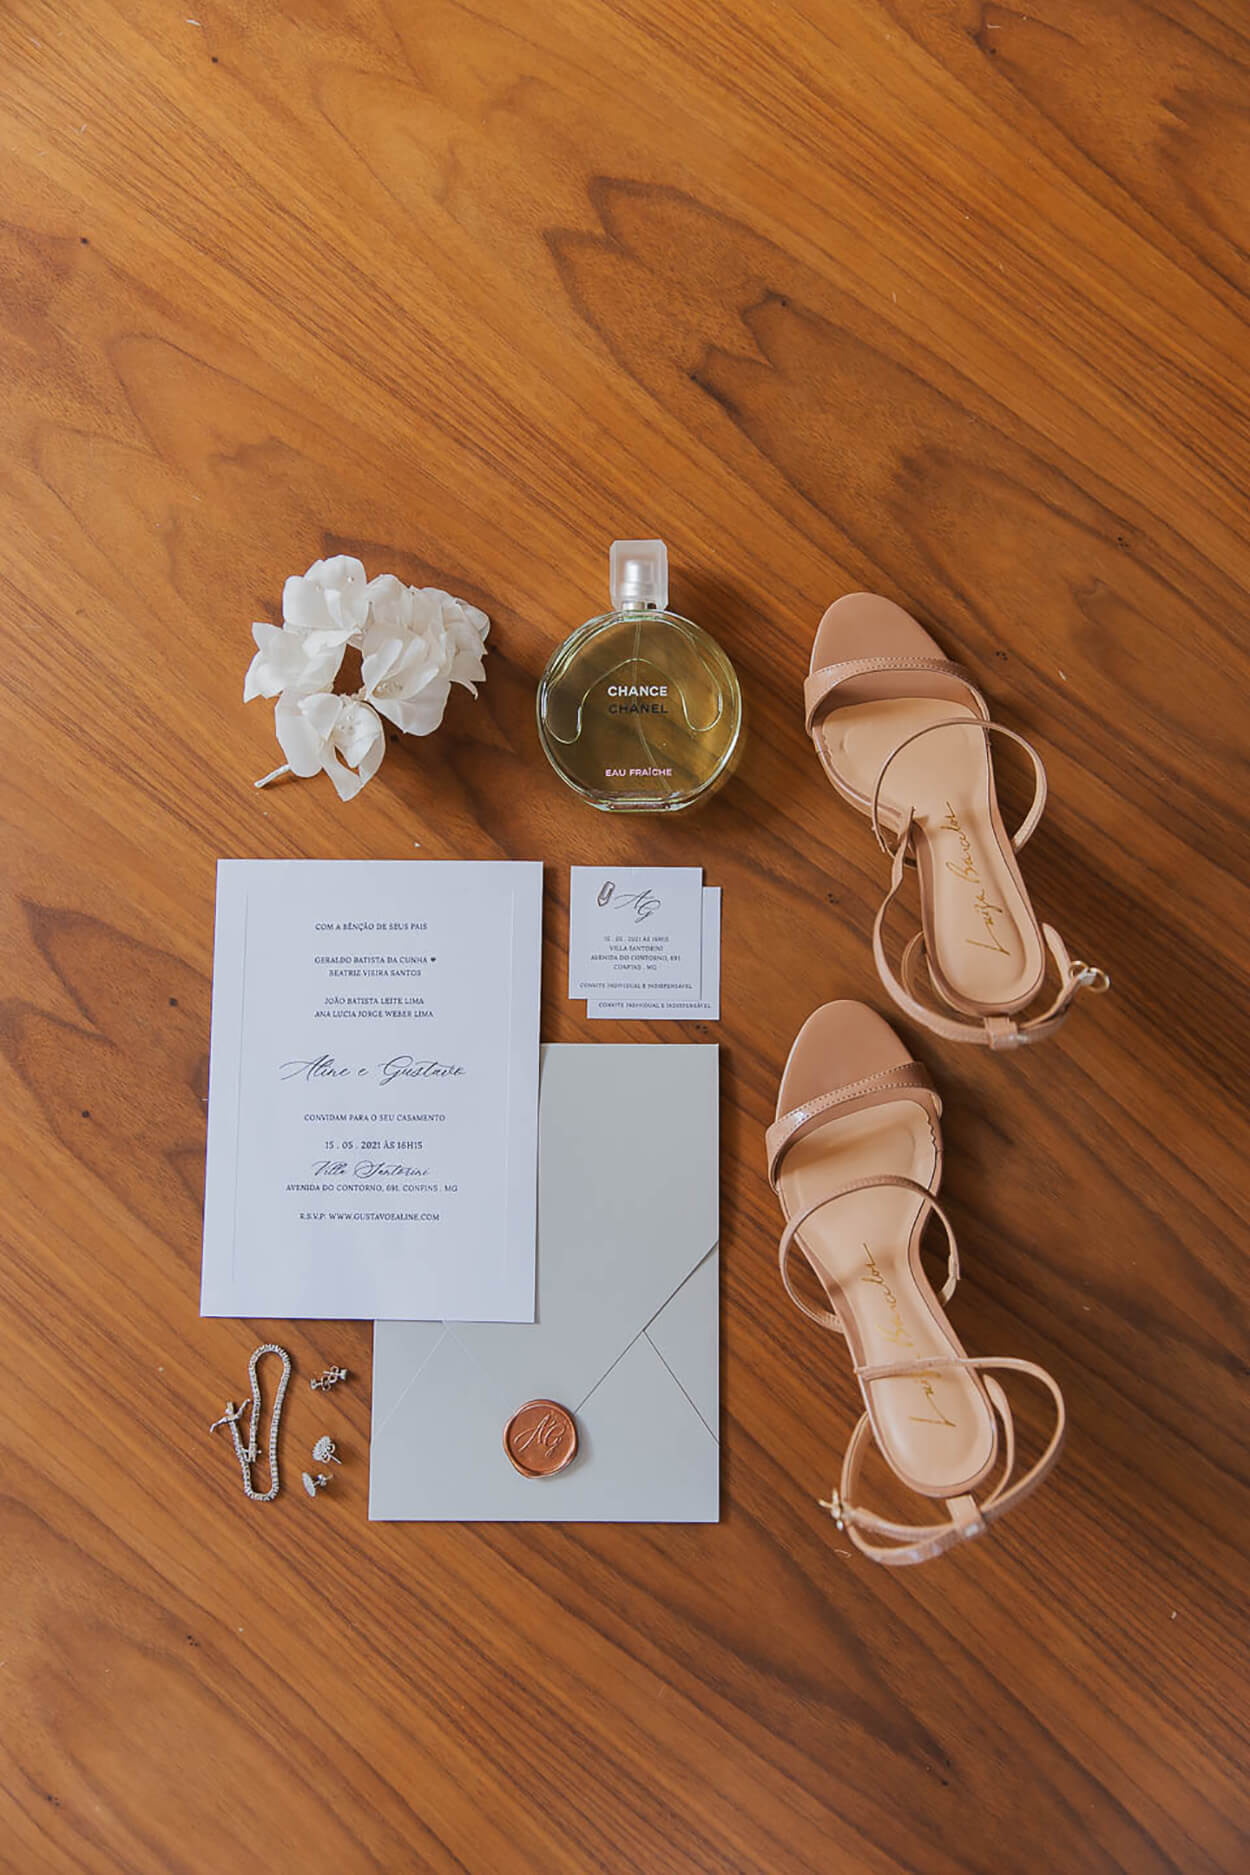 Convite de casamento branco sandália rose e perfume no chão